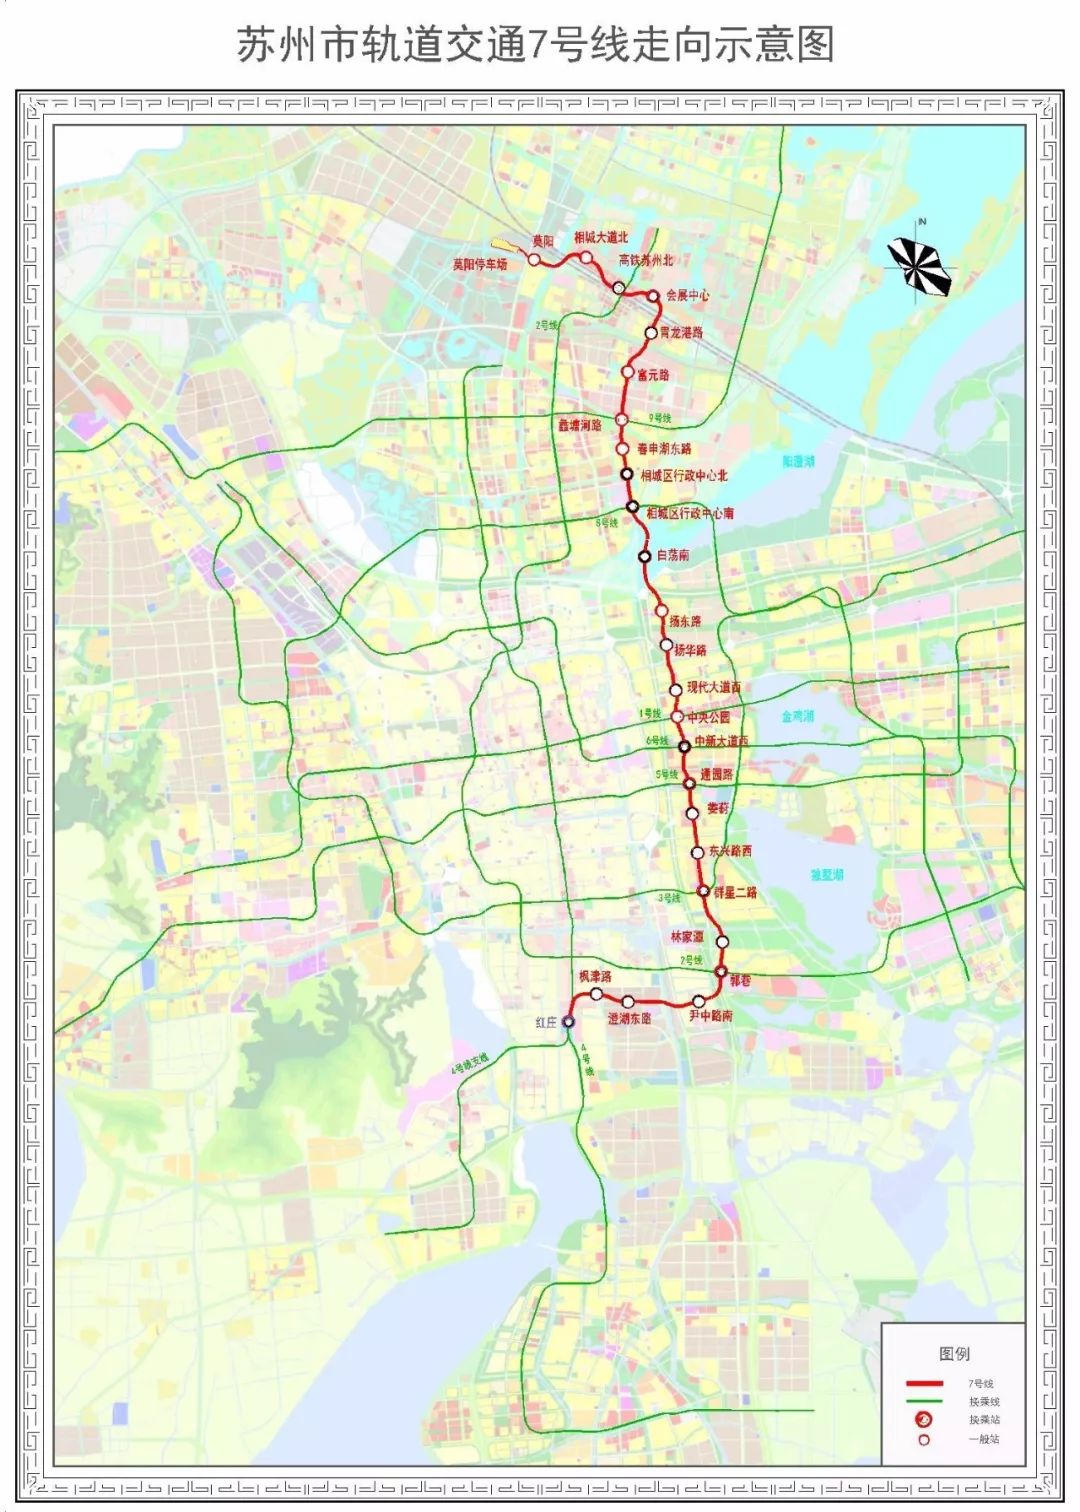 6 km,采用全地下线方式,设站25座(不含红庄站),其中换乘站11座(不含